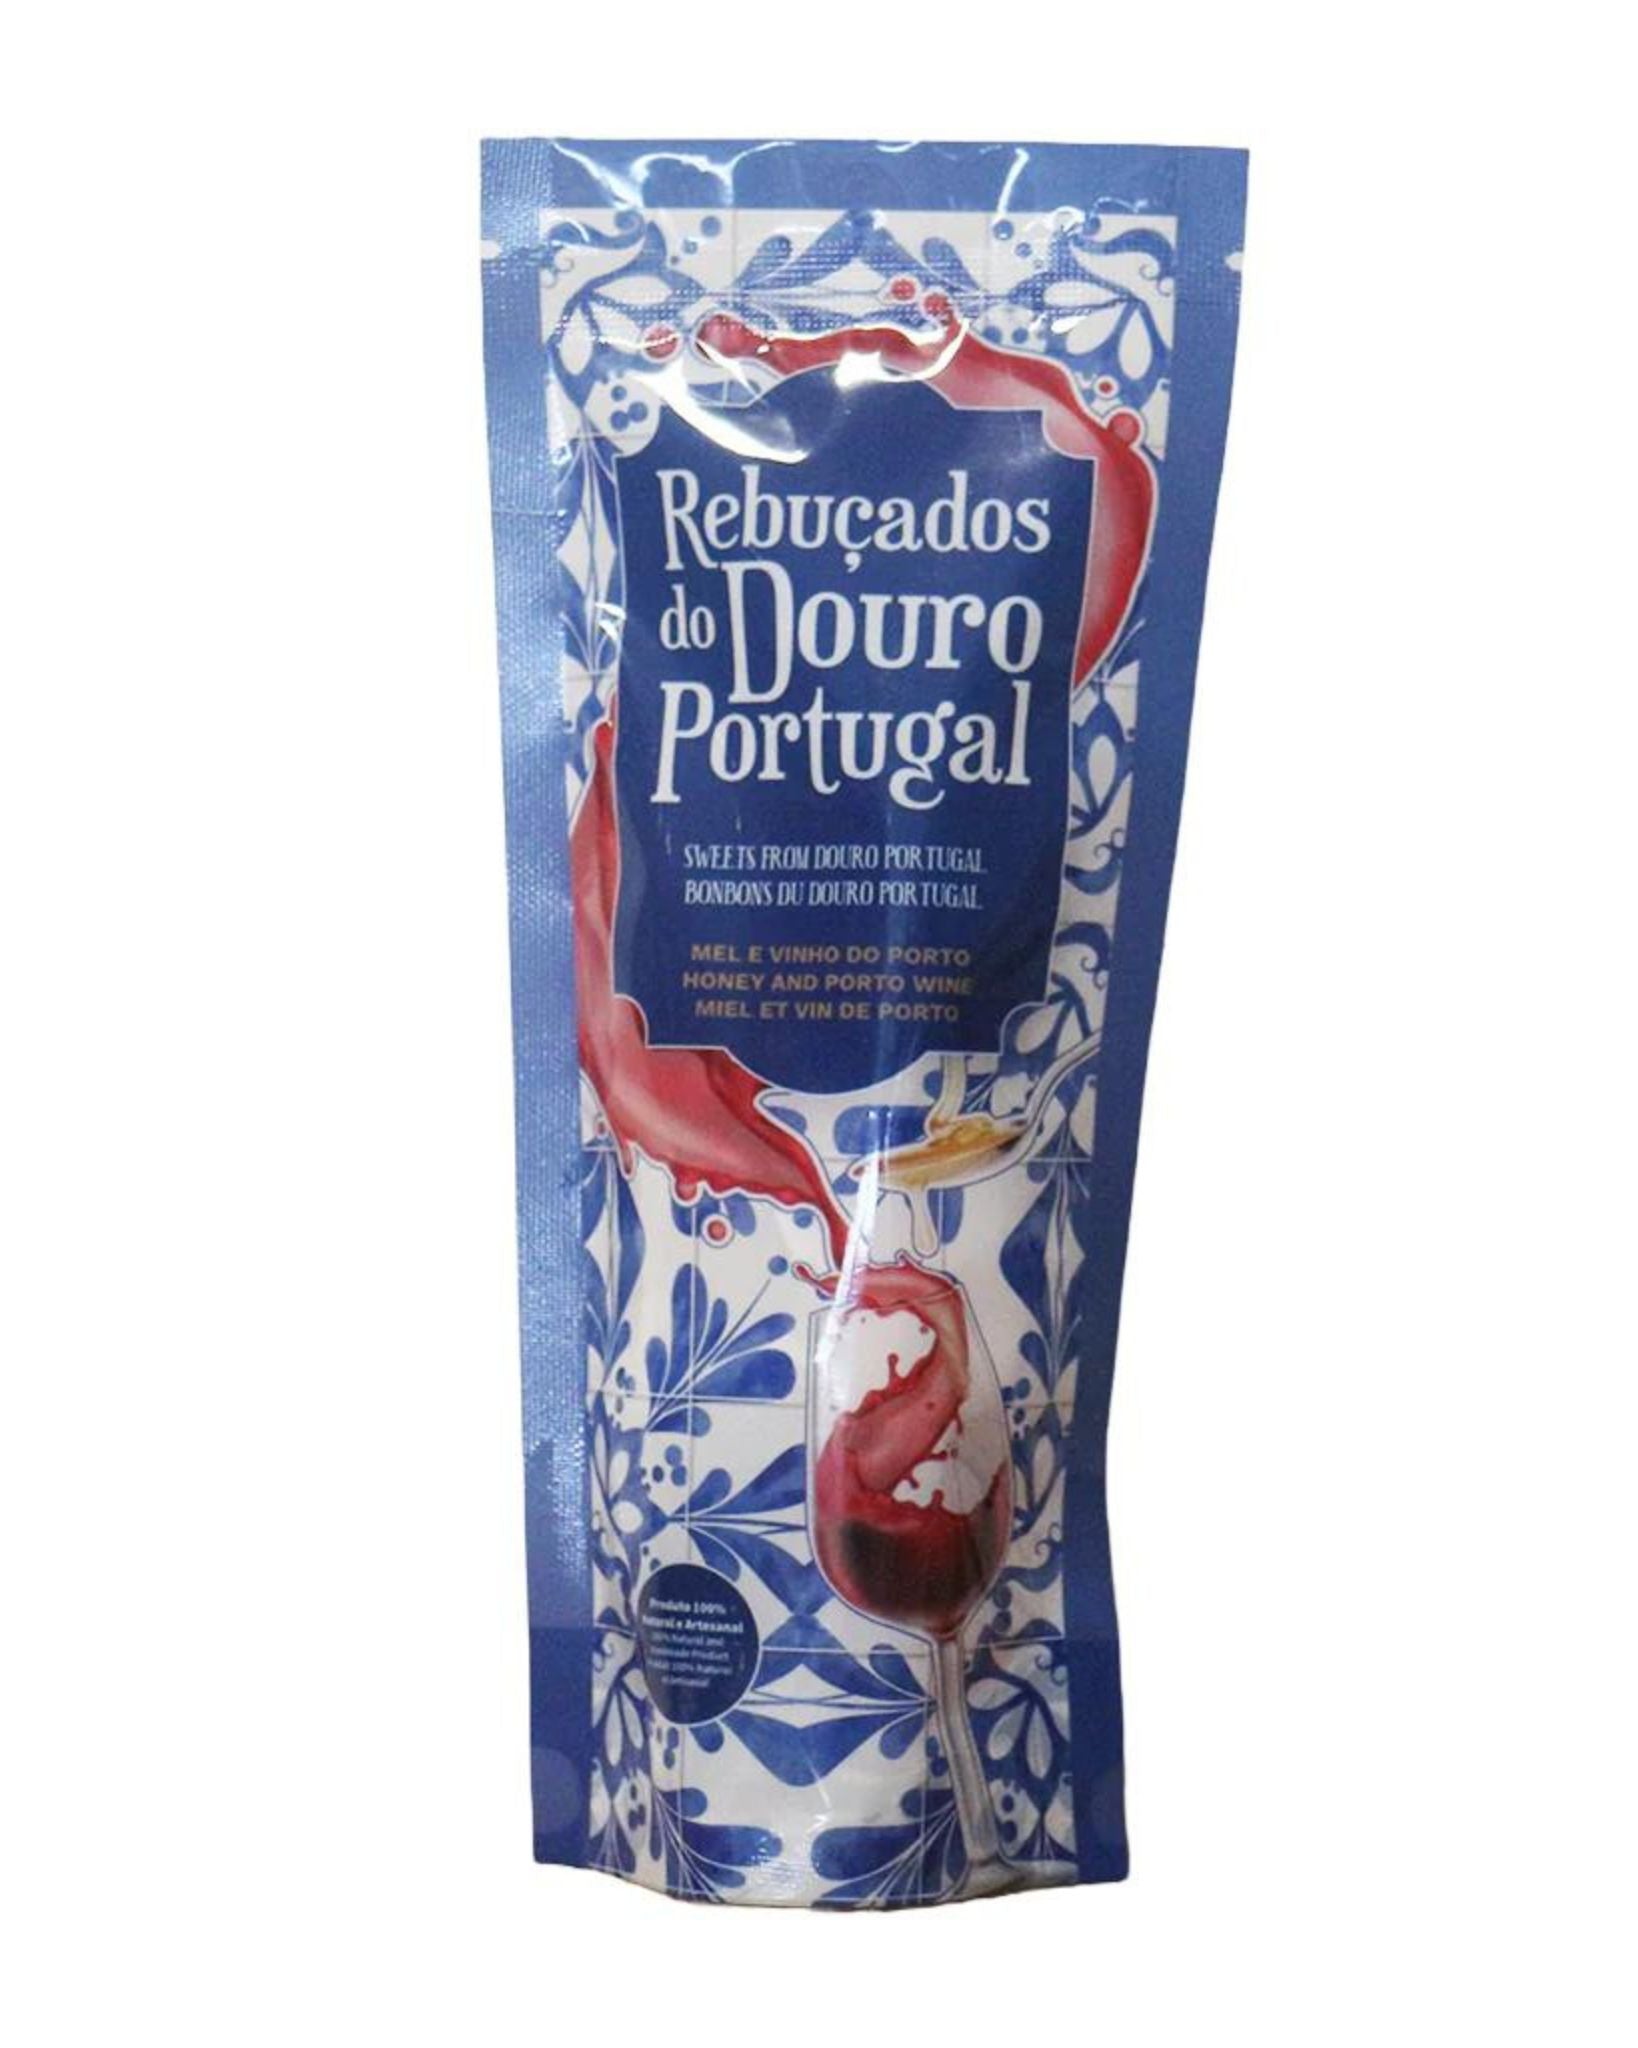 Rebuçados do Douro Portugal  c/ Mel e Vinho do Porto 100g